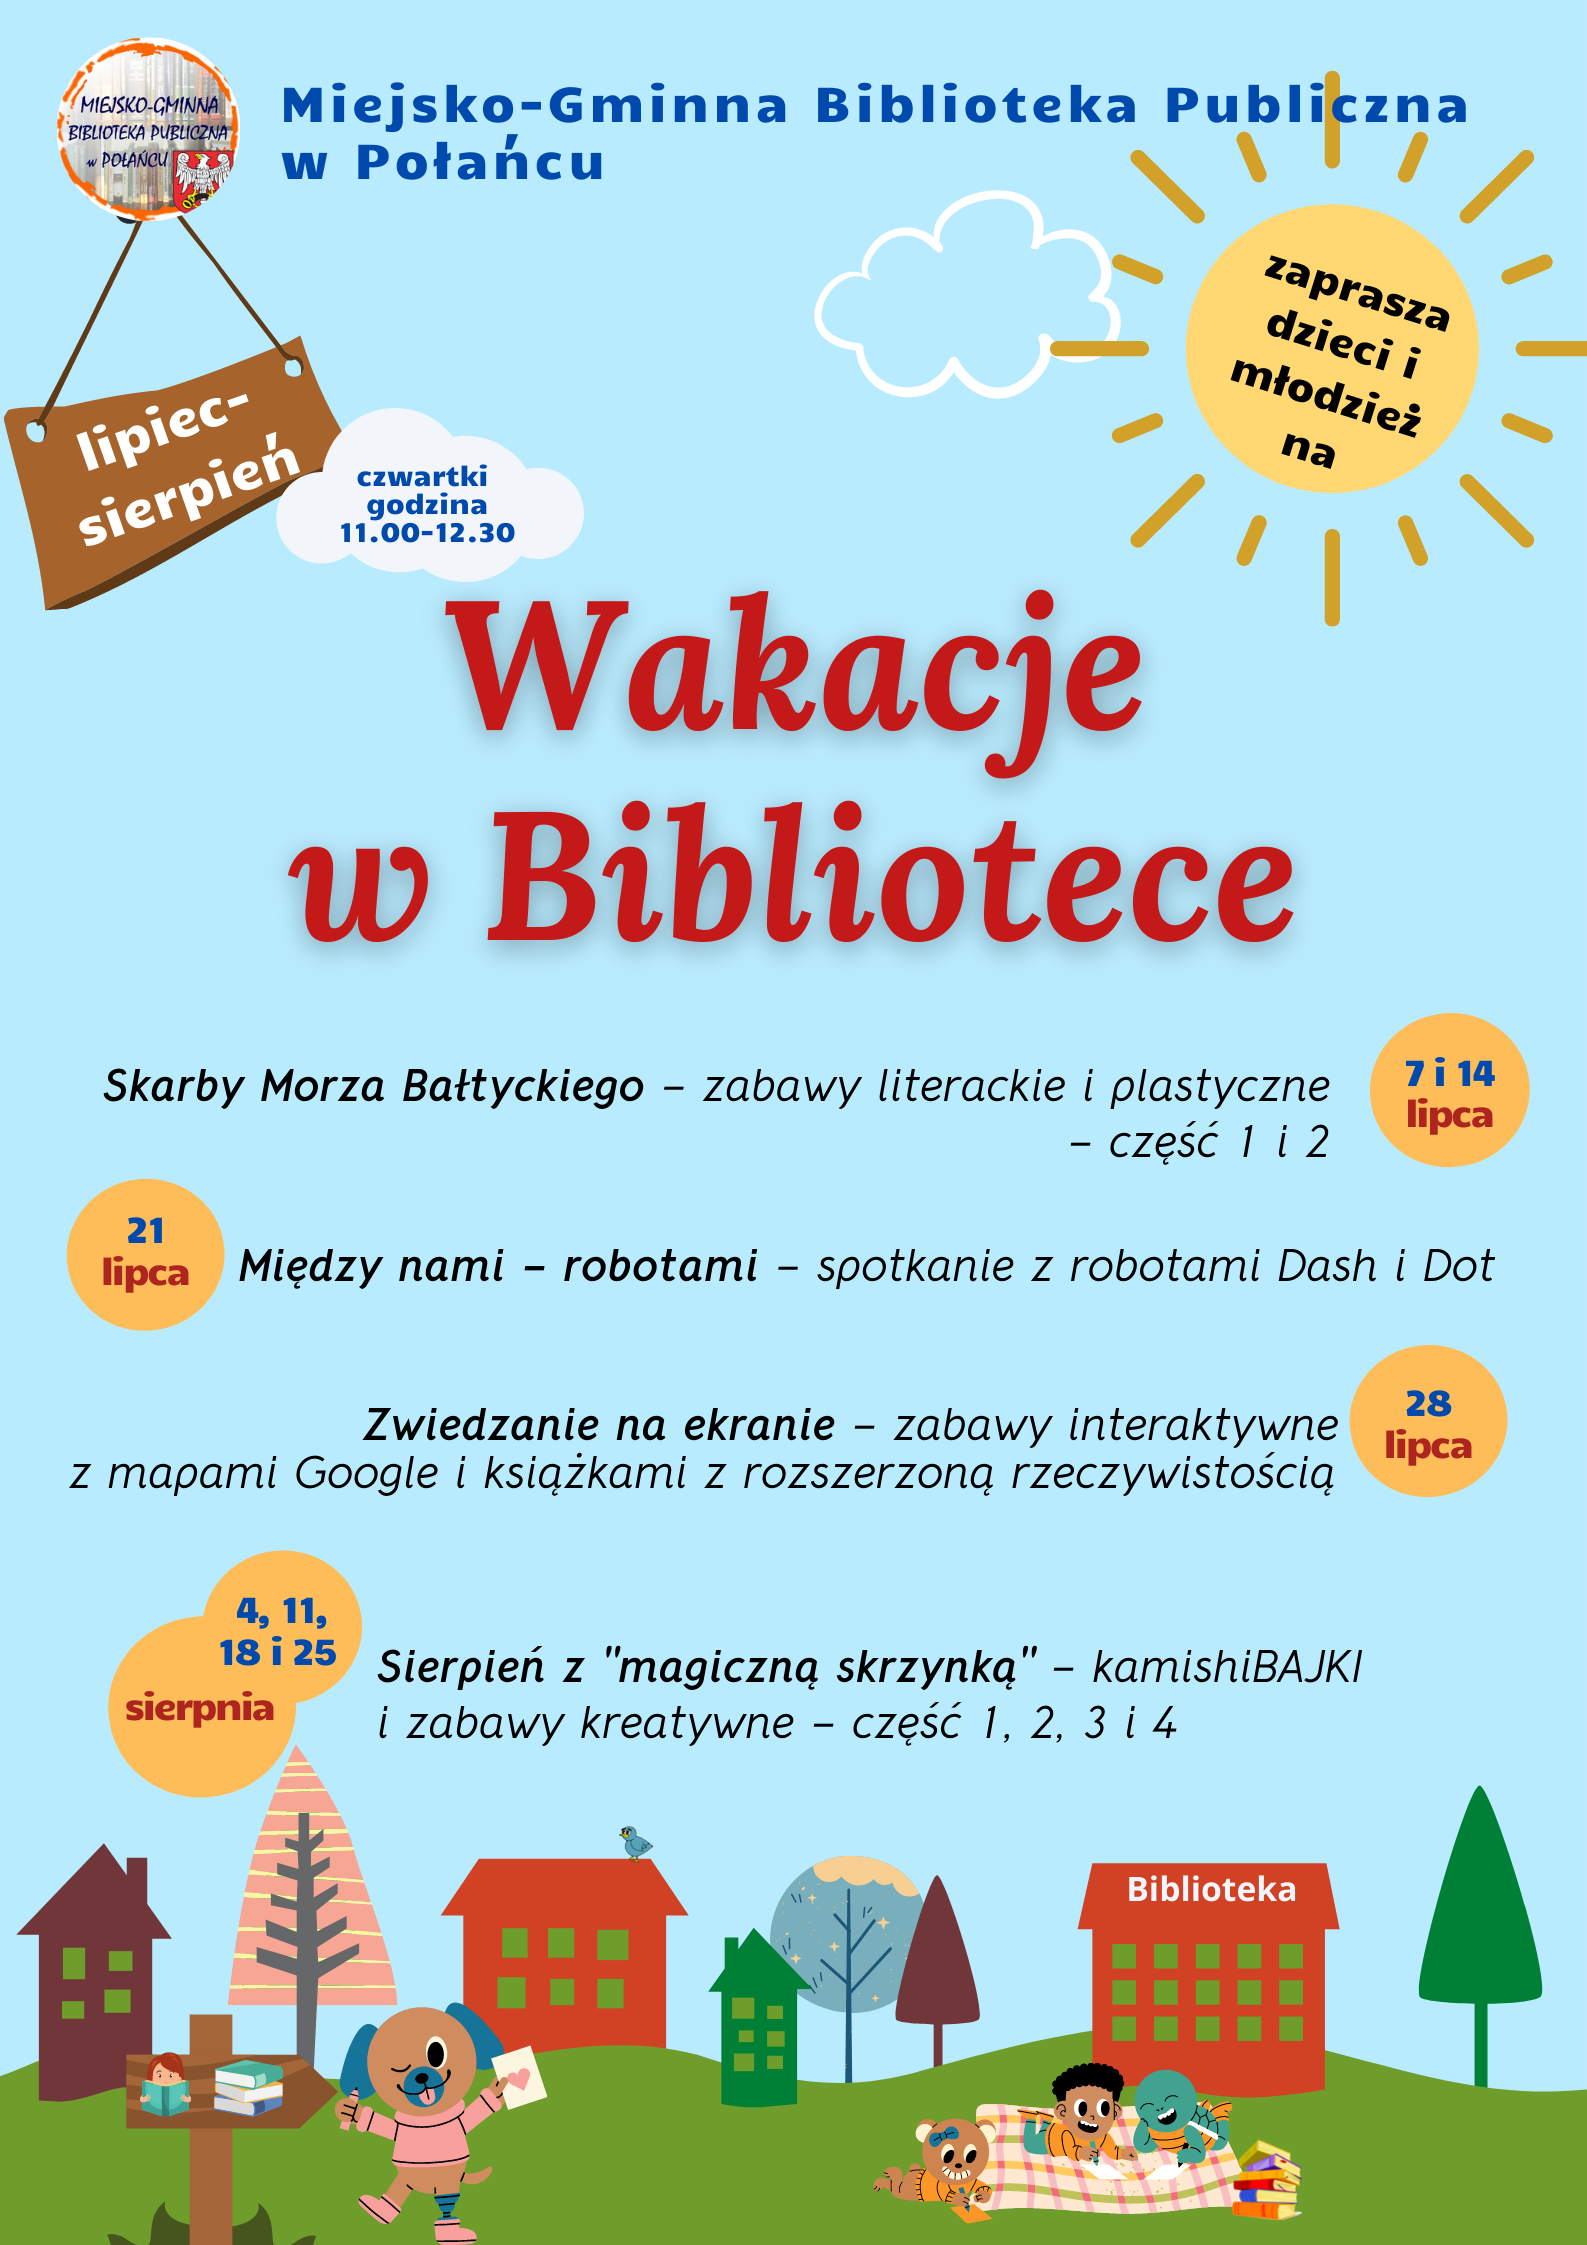 Plakat kolorowy z harmonogramen wakacyjnych zajęć w Bibliotece w Połańcu w lipcu i sierpniu